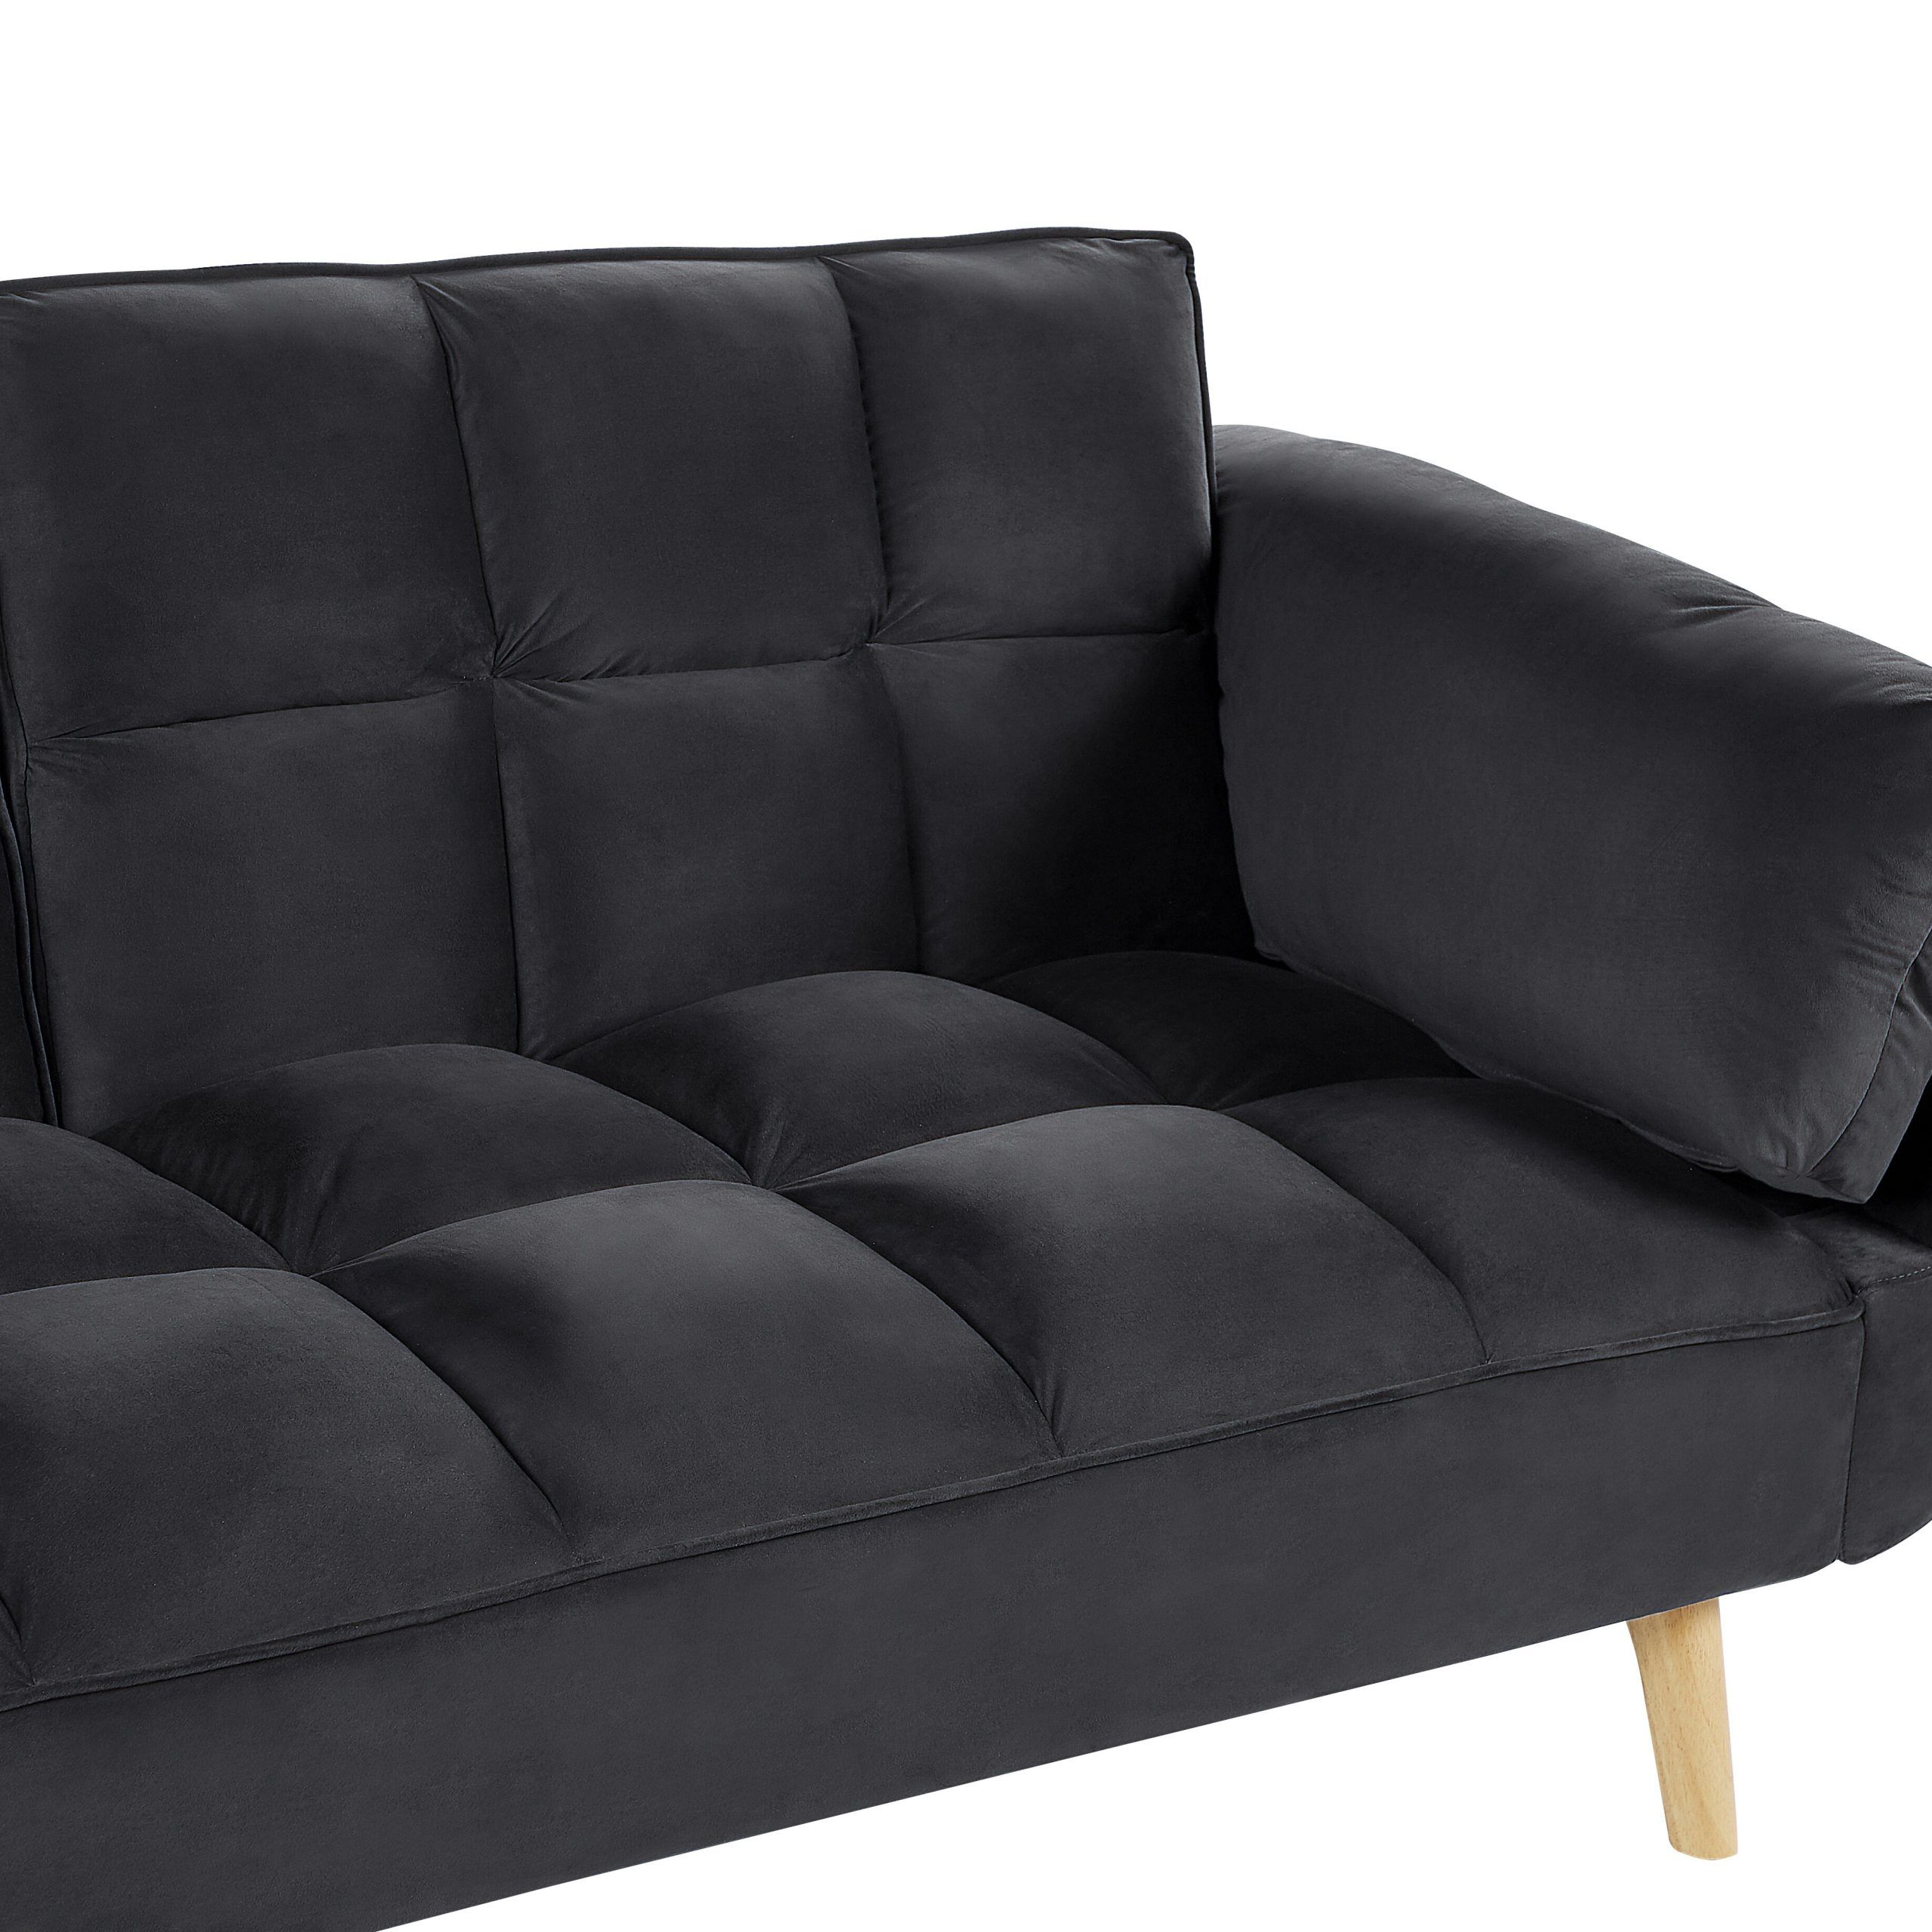 Velvet Sofa Bed Black Asby | Beliani.ch In 2 Seater Black Velvet Sofa Beds (Gallery 15 of 20)